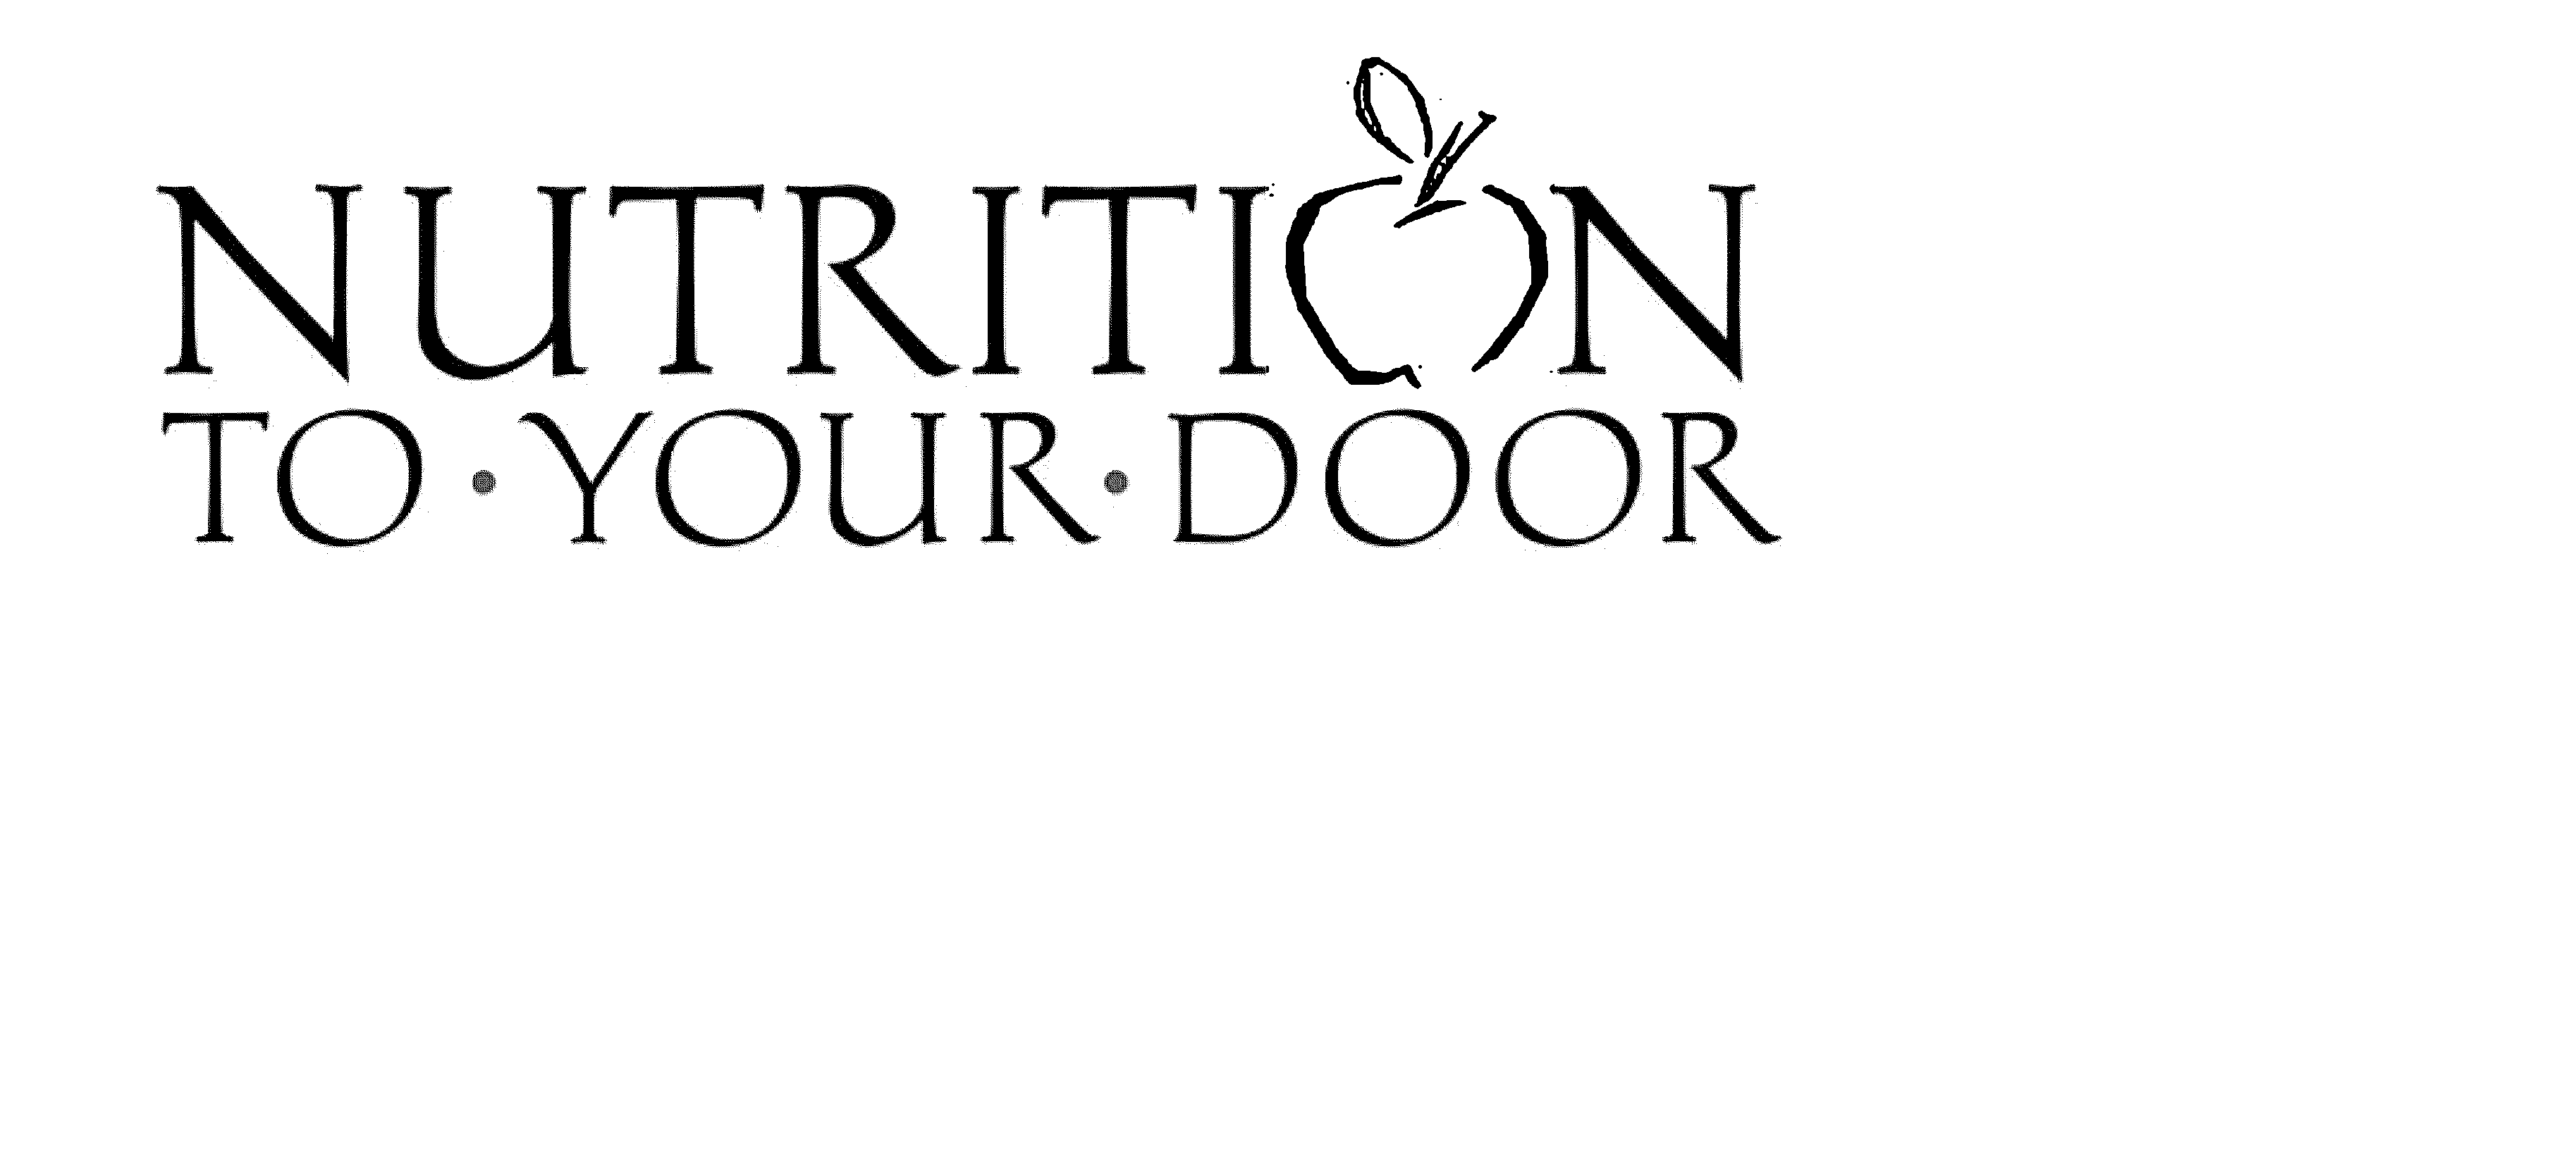  NUTRITION TO YOUR DOOR